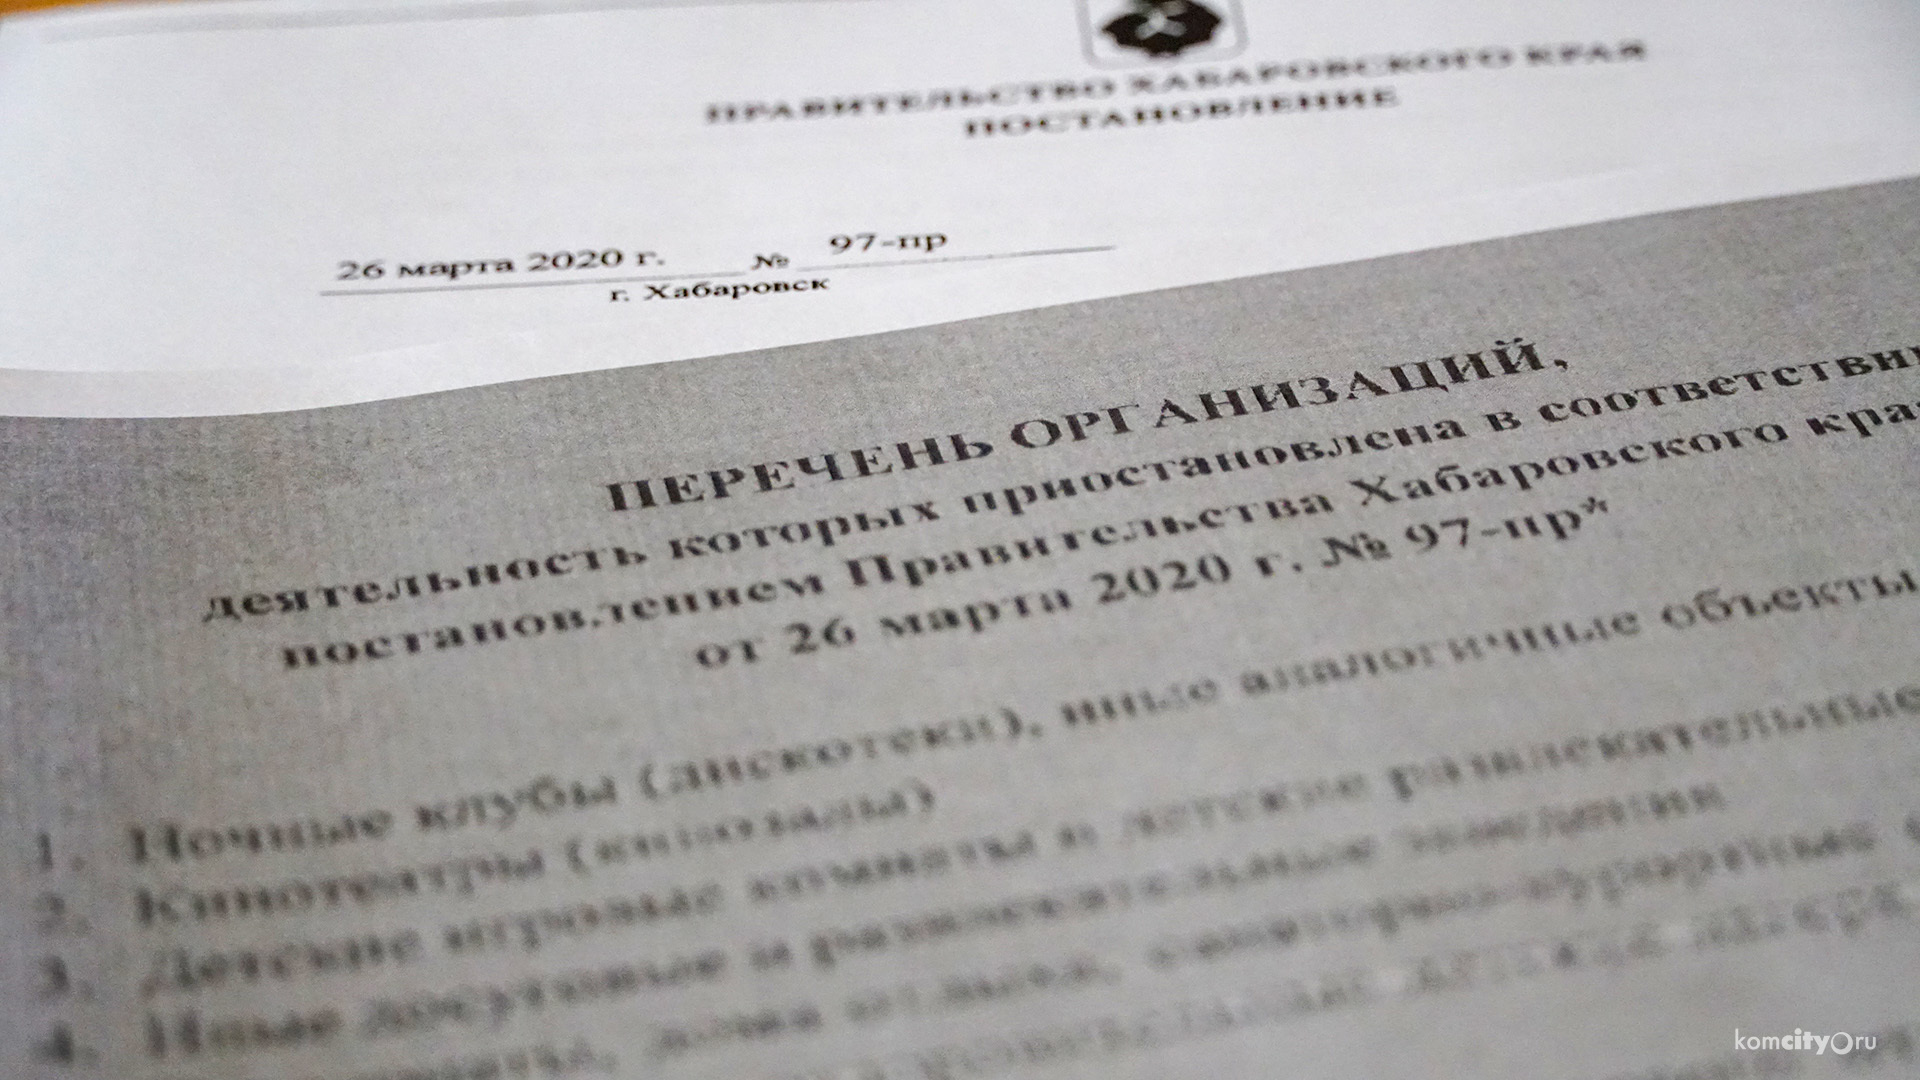 Больше сотни жителей Комсомольска-на-Амуре подали заявления на 6-тысячную выплату в связи с потерей работы или дохода